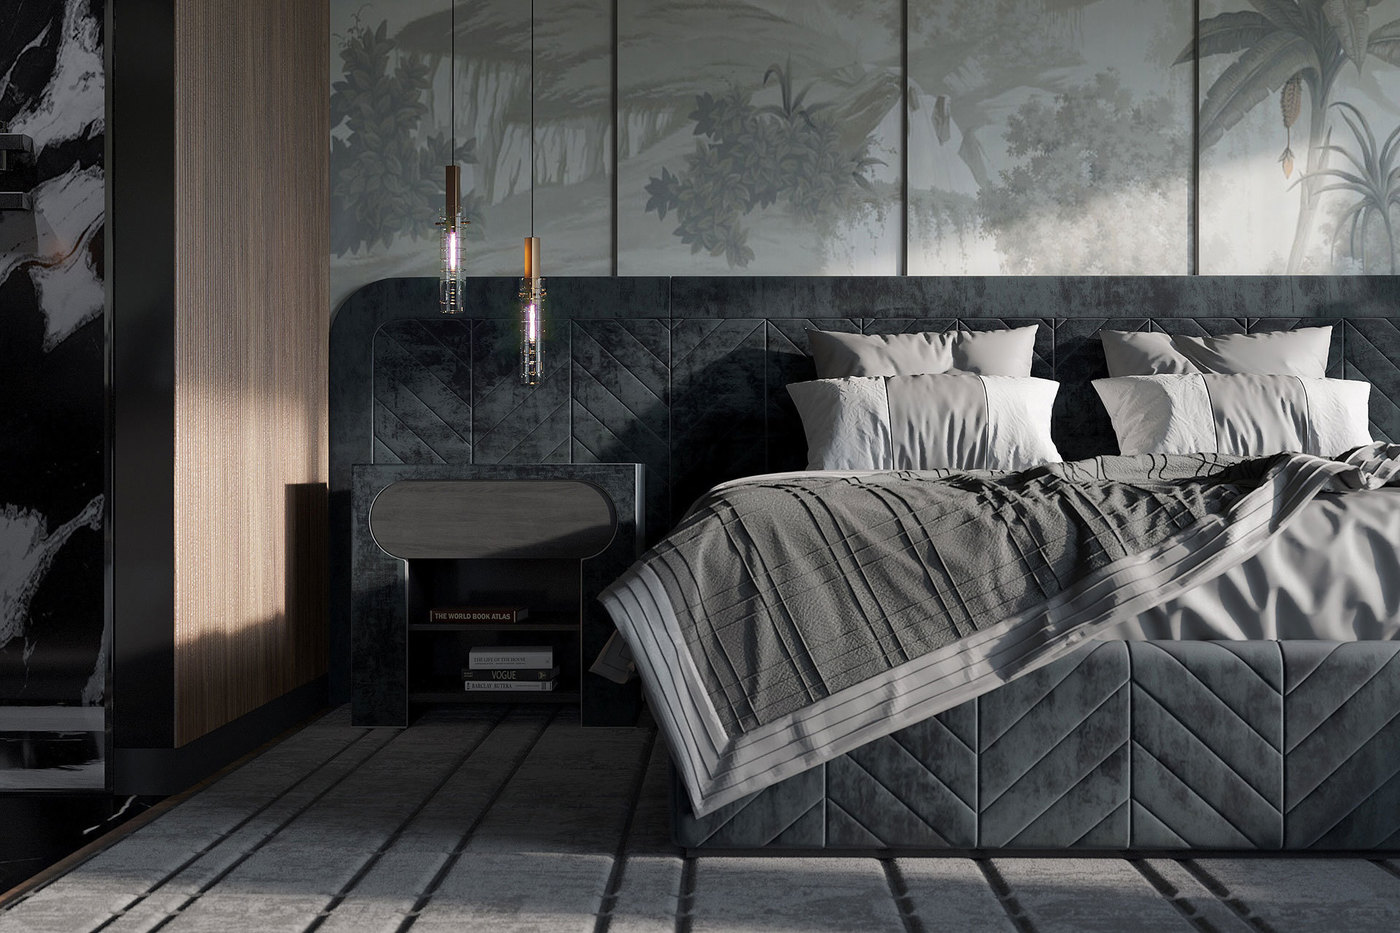 Ceccotti Bed by Vincenzo de Cotiis, Quadrilatte Rugs and Preciosa Geometric Pendants by Ekaterina Elizarova - Elizarova Design Studio